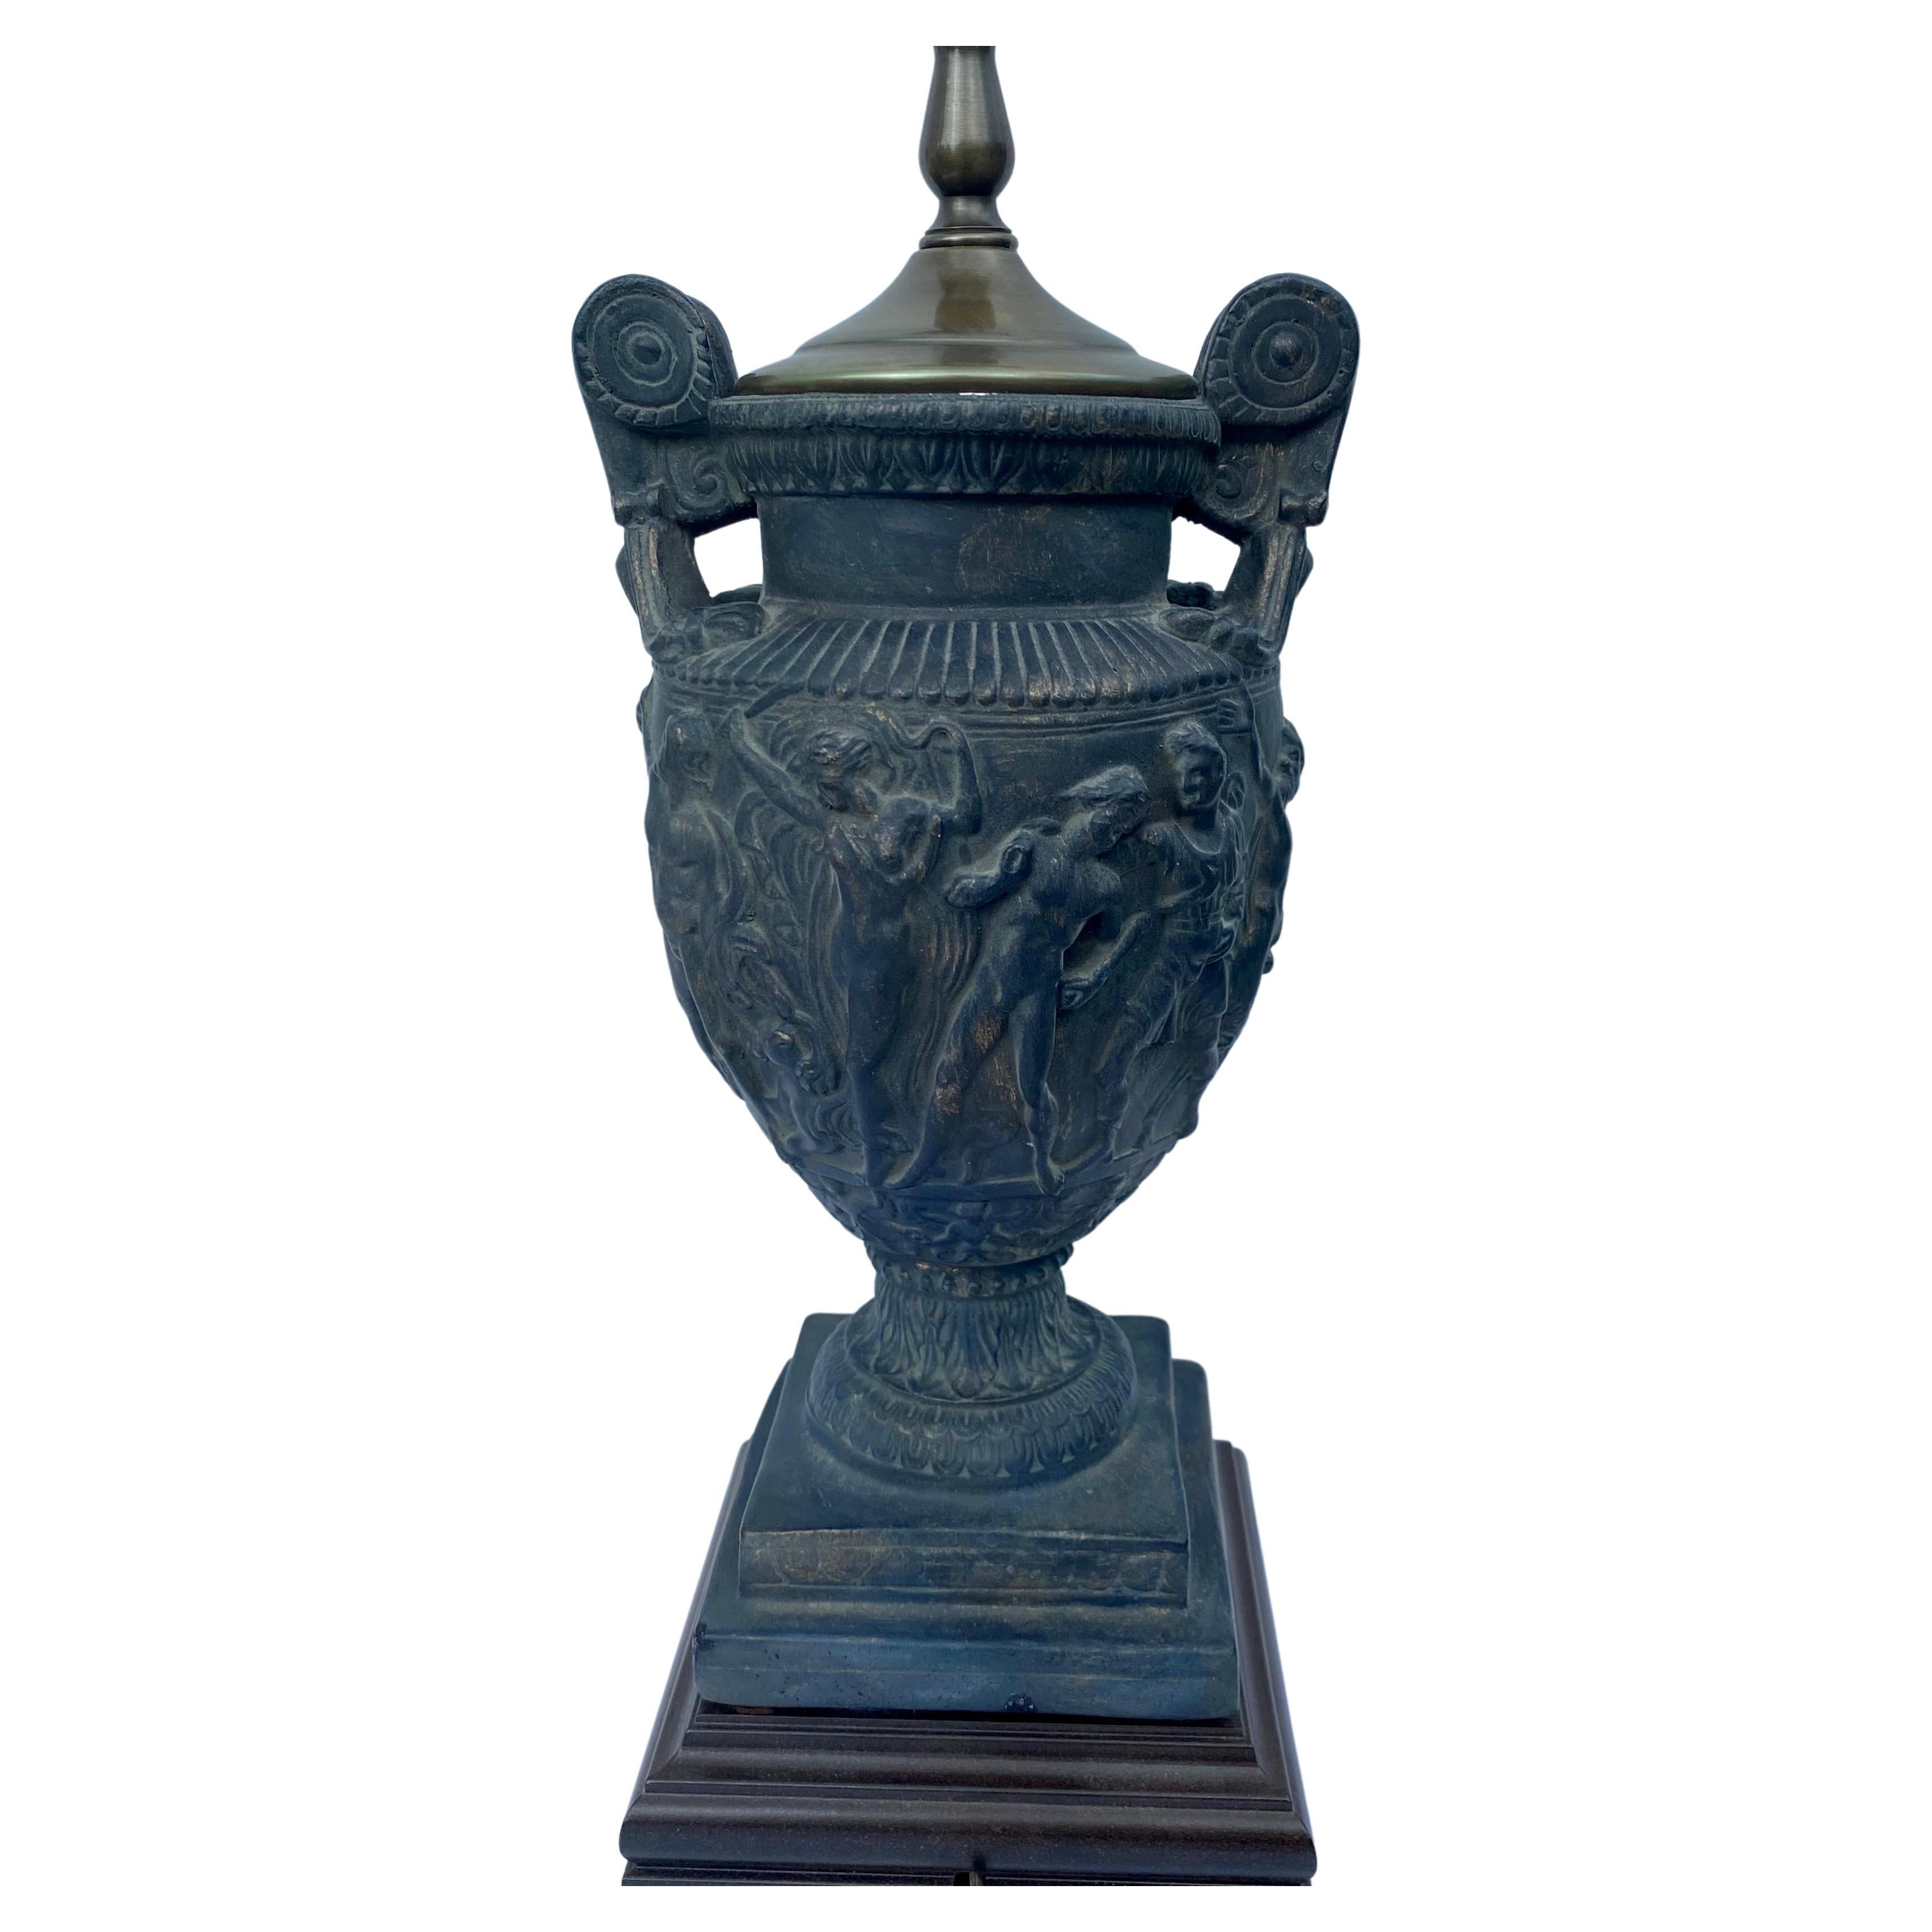 Klassische Urnen-Tischlampe mit Griff auf quadratischem Holzsockel. Diese Lampe in Form einer Urne ist der römischen Towley-Vase nachempfunden und zeigt Relieffiguren in einer gealterten, schwarz patinierten Oberfläche. Lampenschirm nicht enthalten.